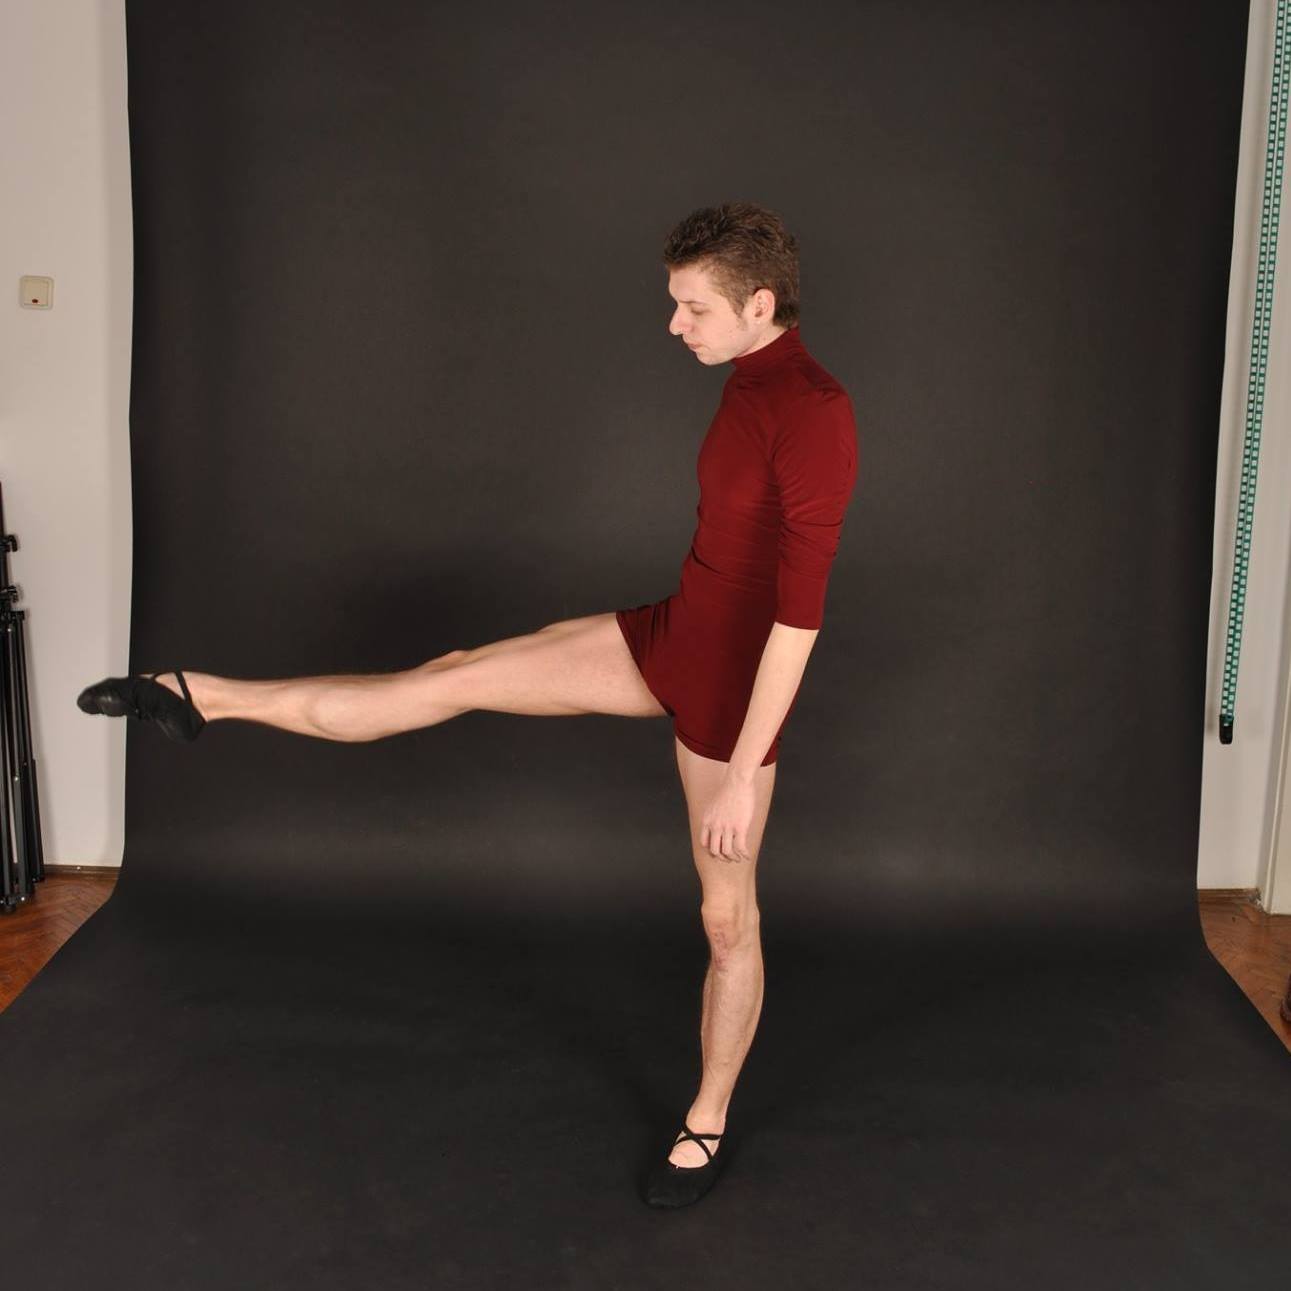 Despre lumea baletului – Interviu cu Andrei Nicolae